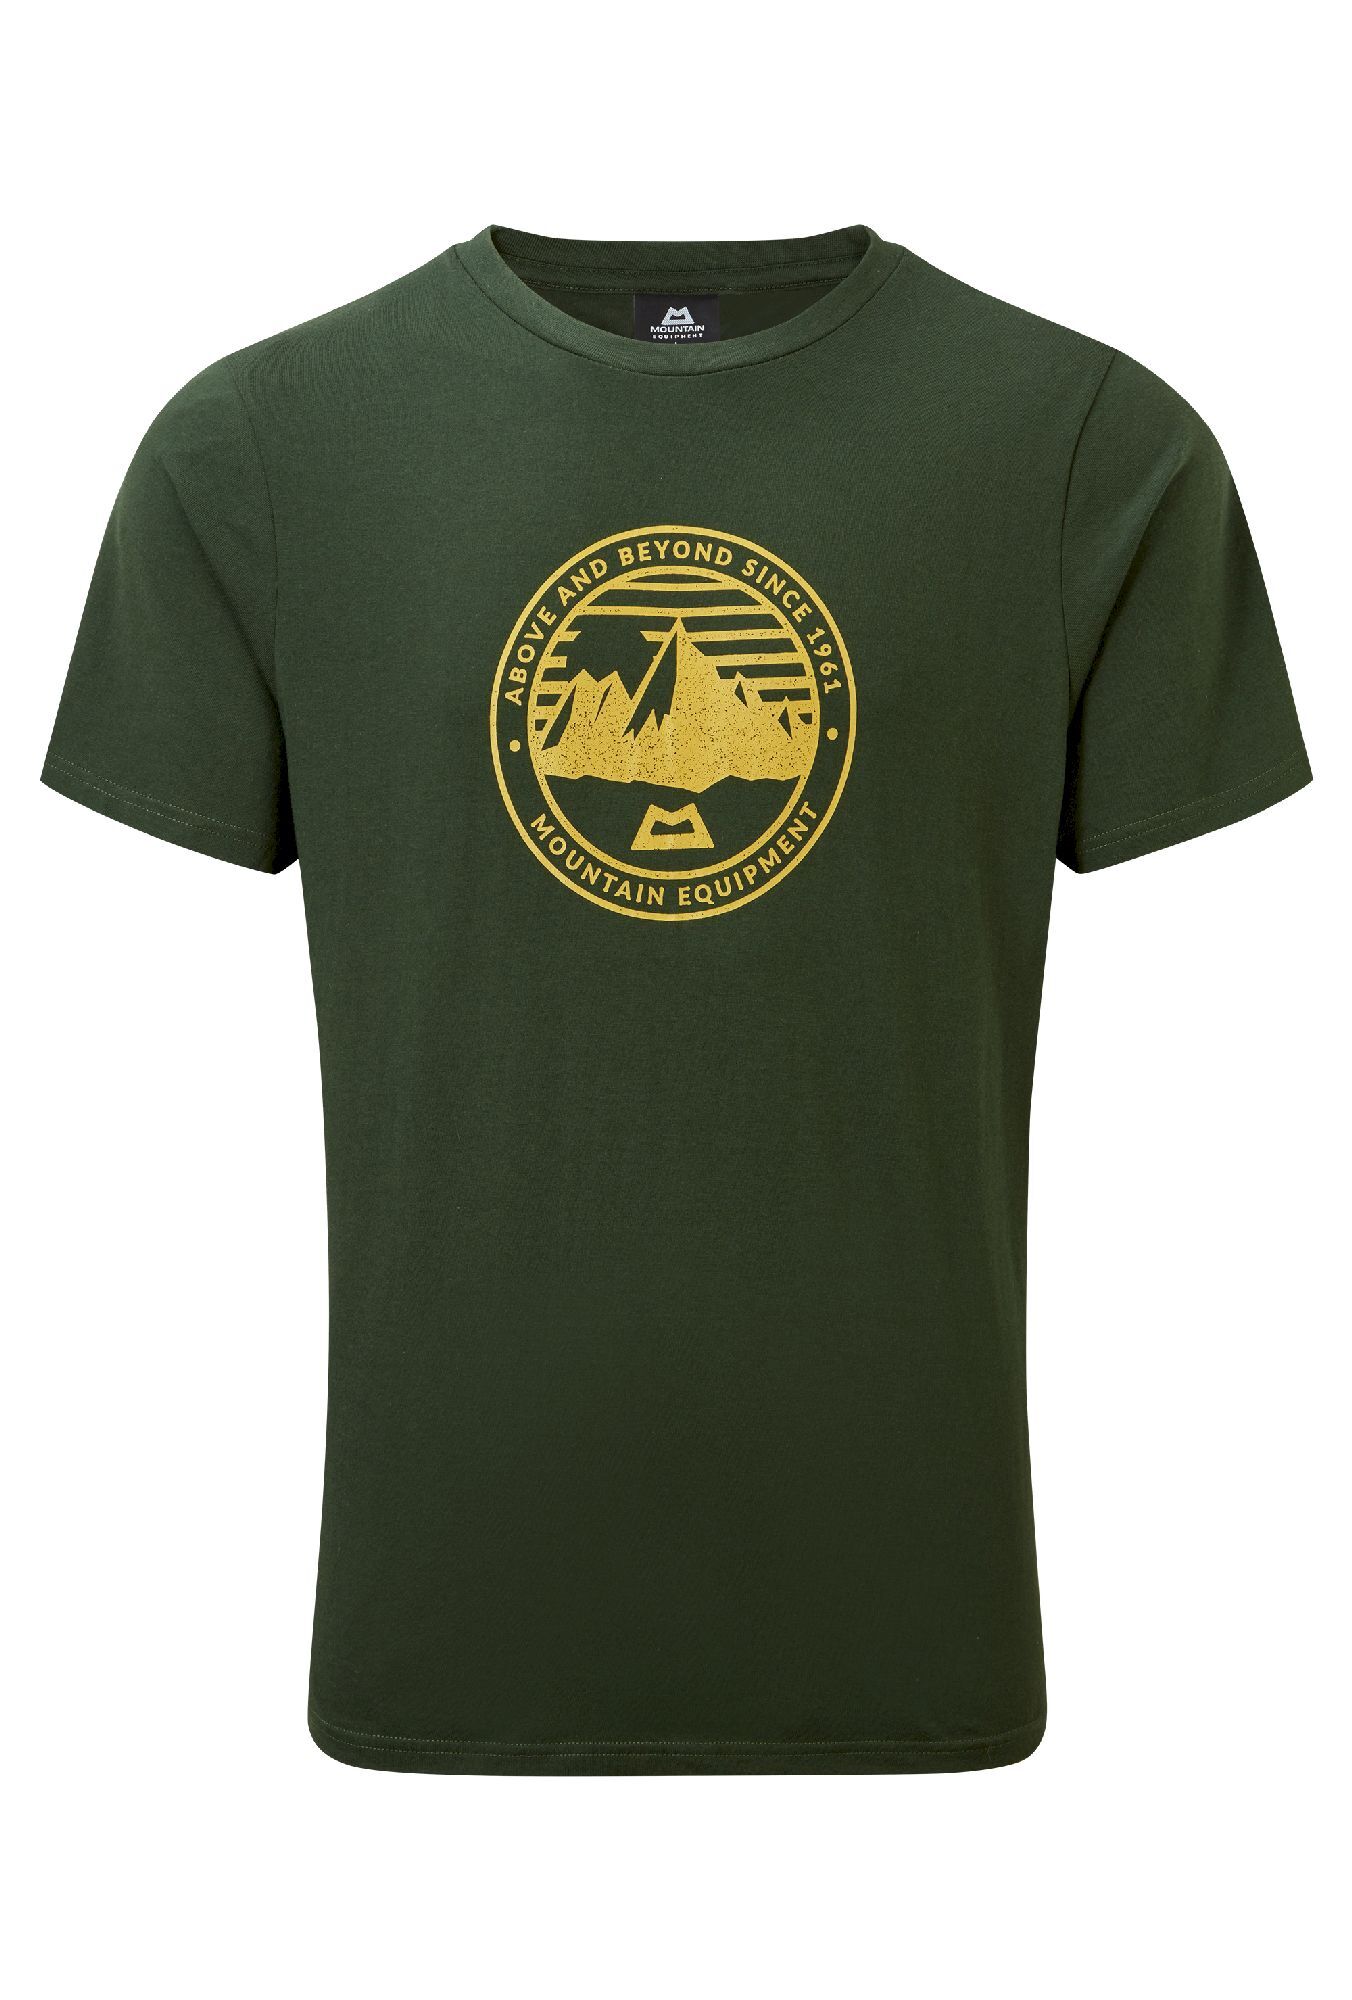 Mountain Equipment Roundel Tee - T-shirt - Heren